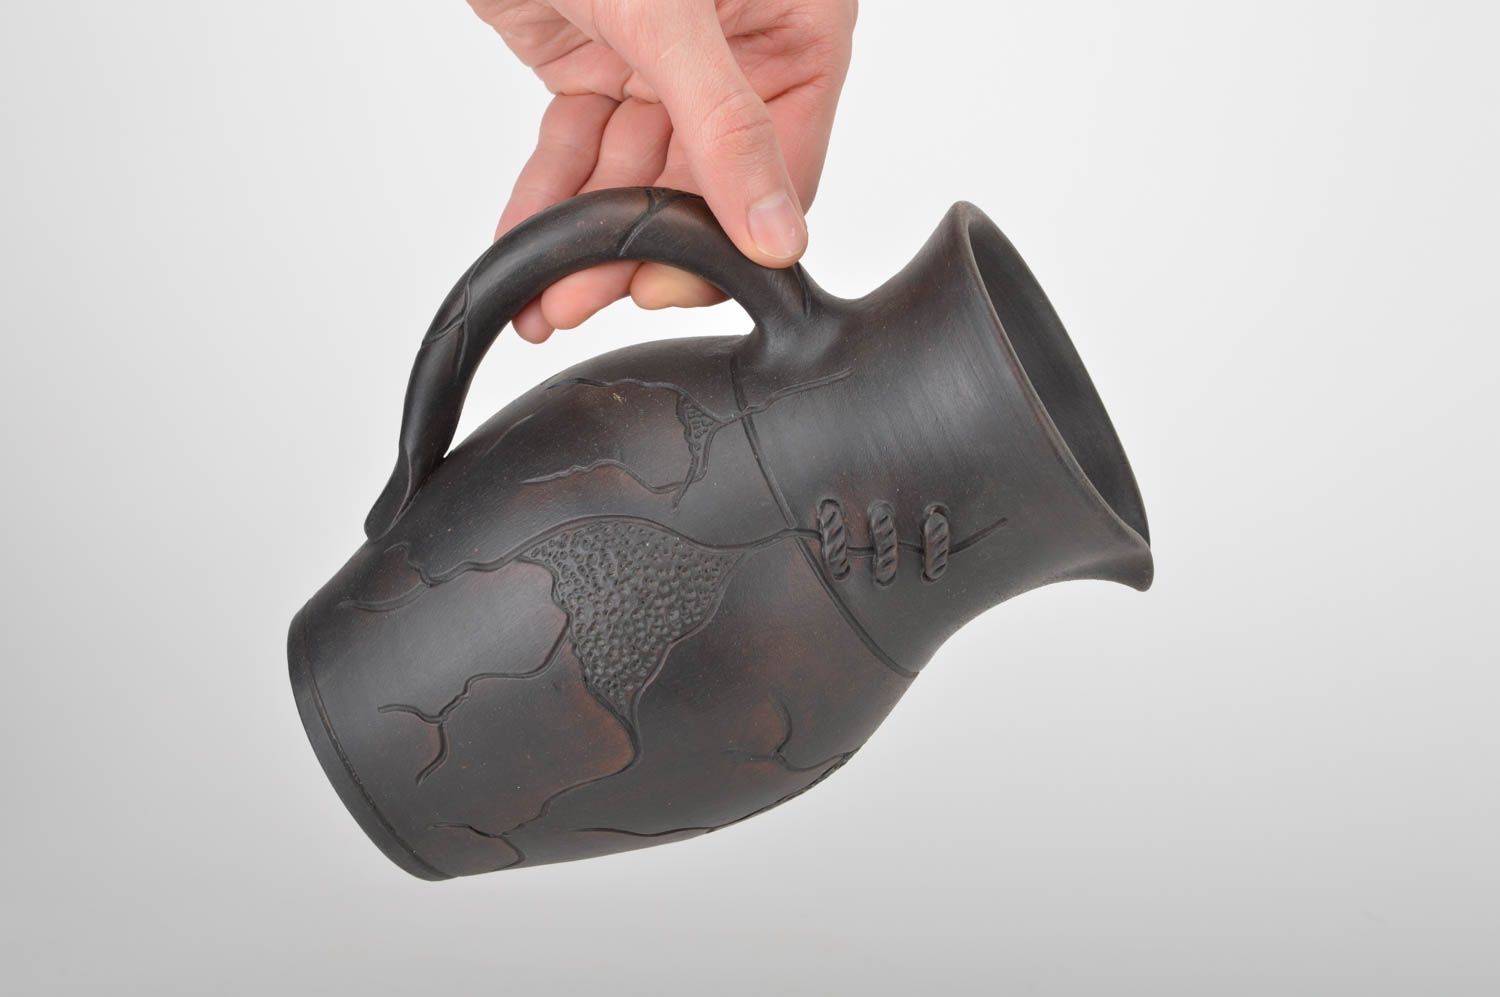 60 oz ceramic water jug with handle in dark brown color 2 lb photo 3